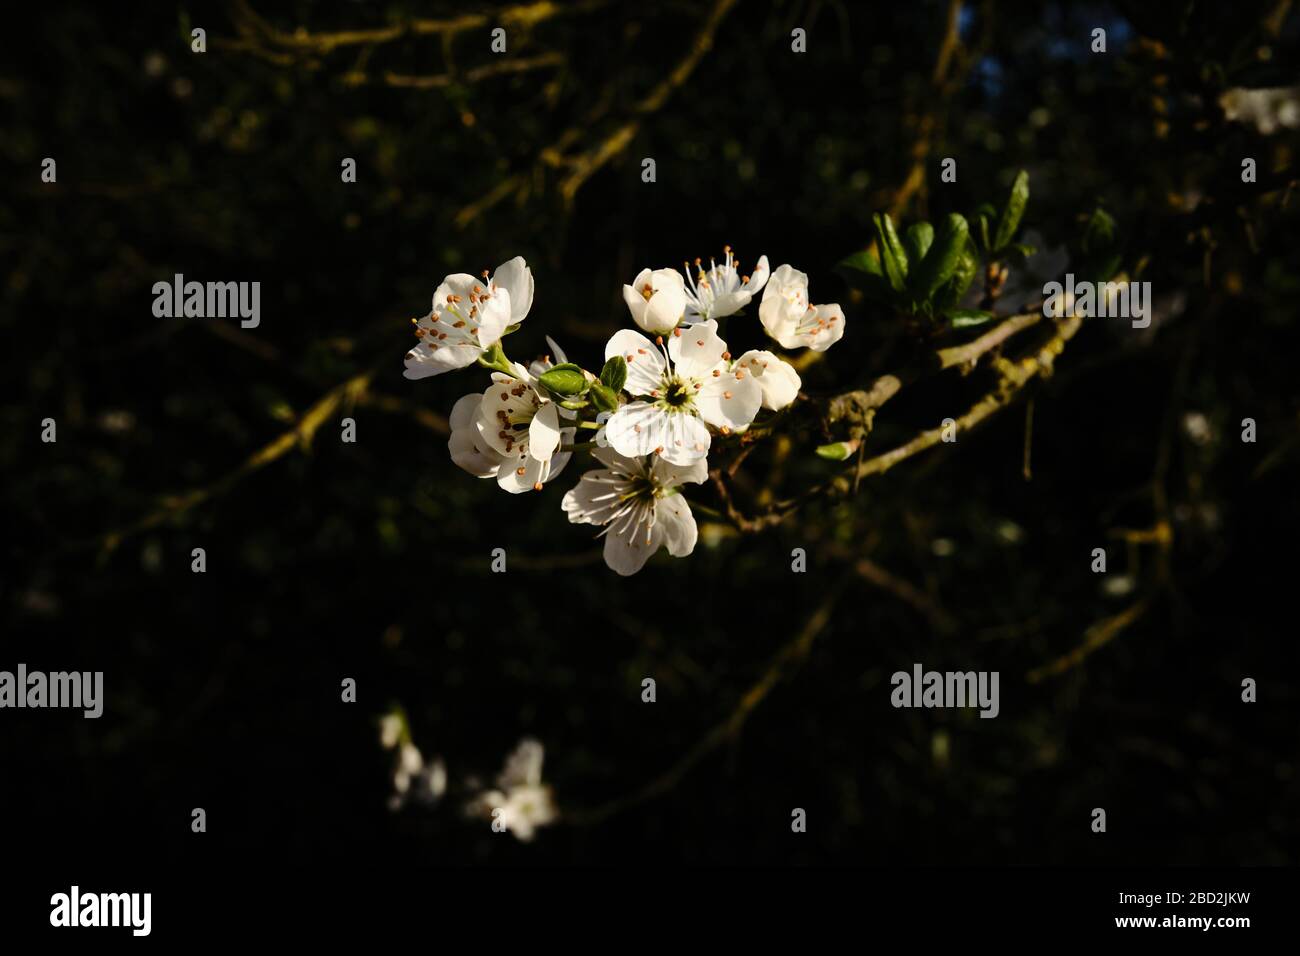 Flores silvestres de damomo Prunus domestica insititia pétalos blancos iluminados por el sol de la tarde con fondo sombreado Foto de stock